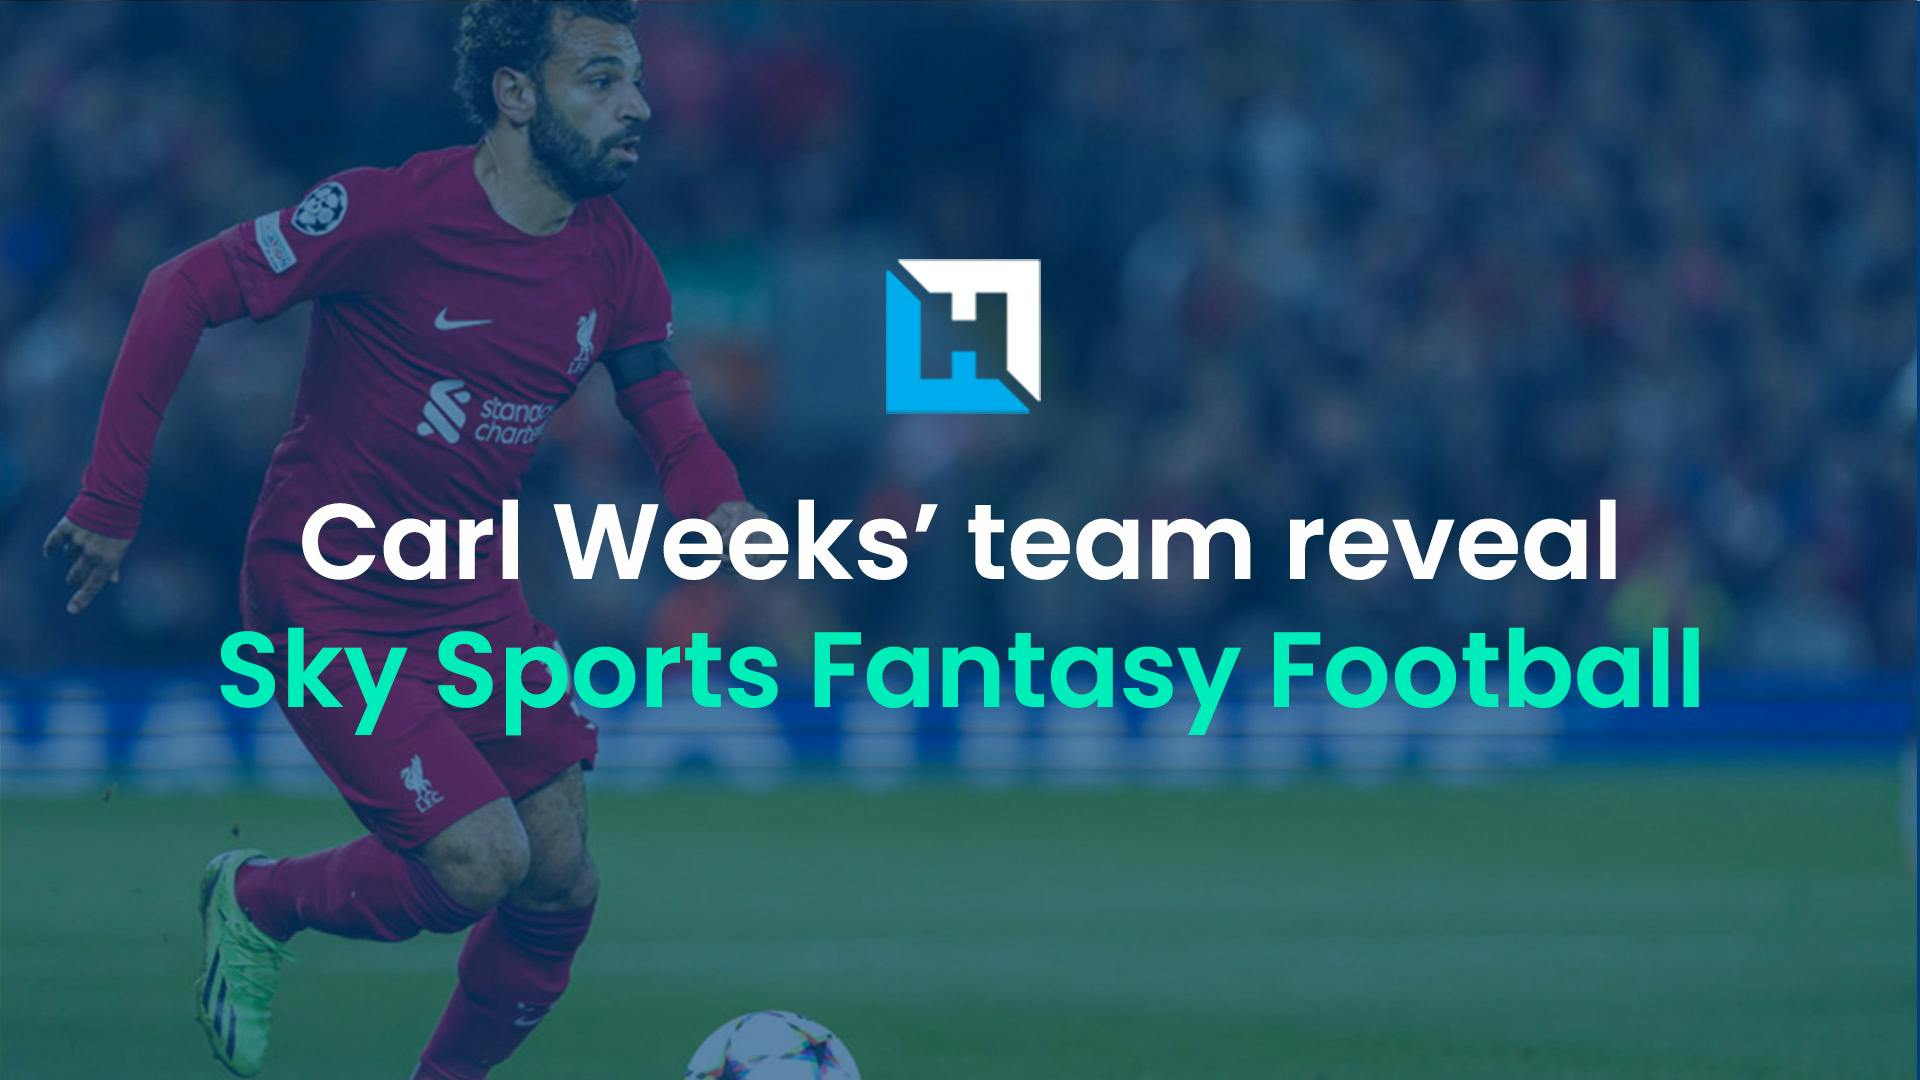 Sky Fantasy Football Gameweek 10: Carl Weeks’ team reveal and best team analysis